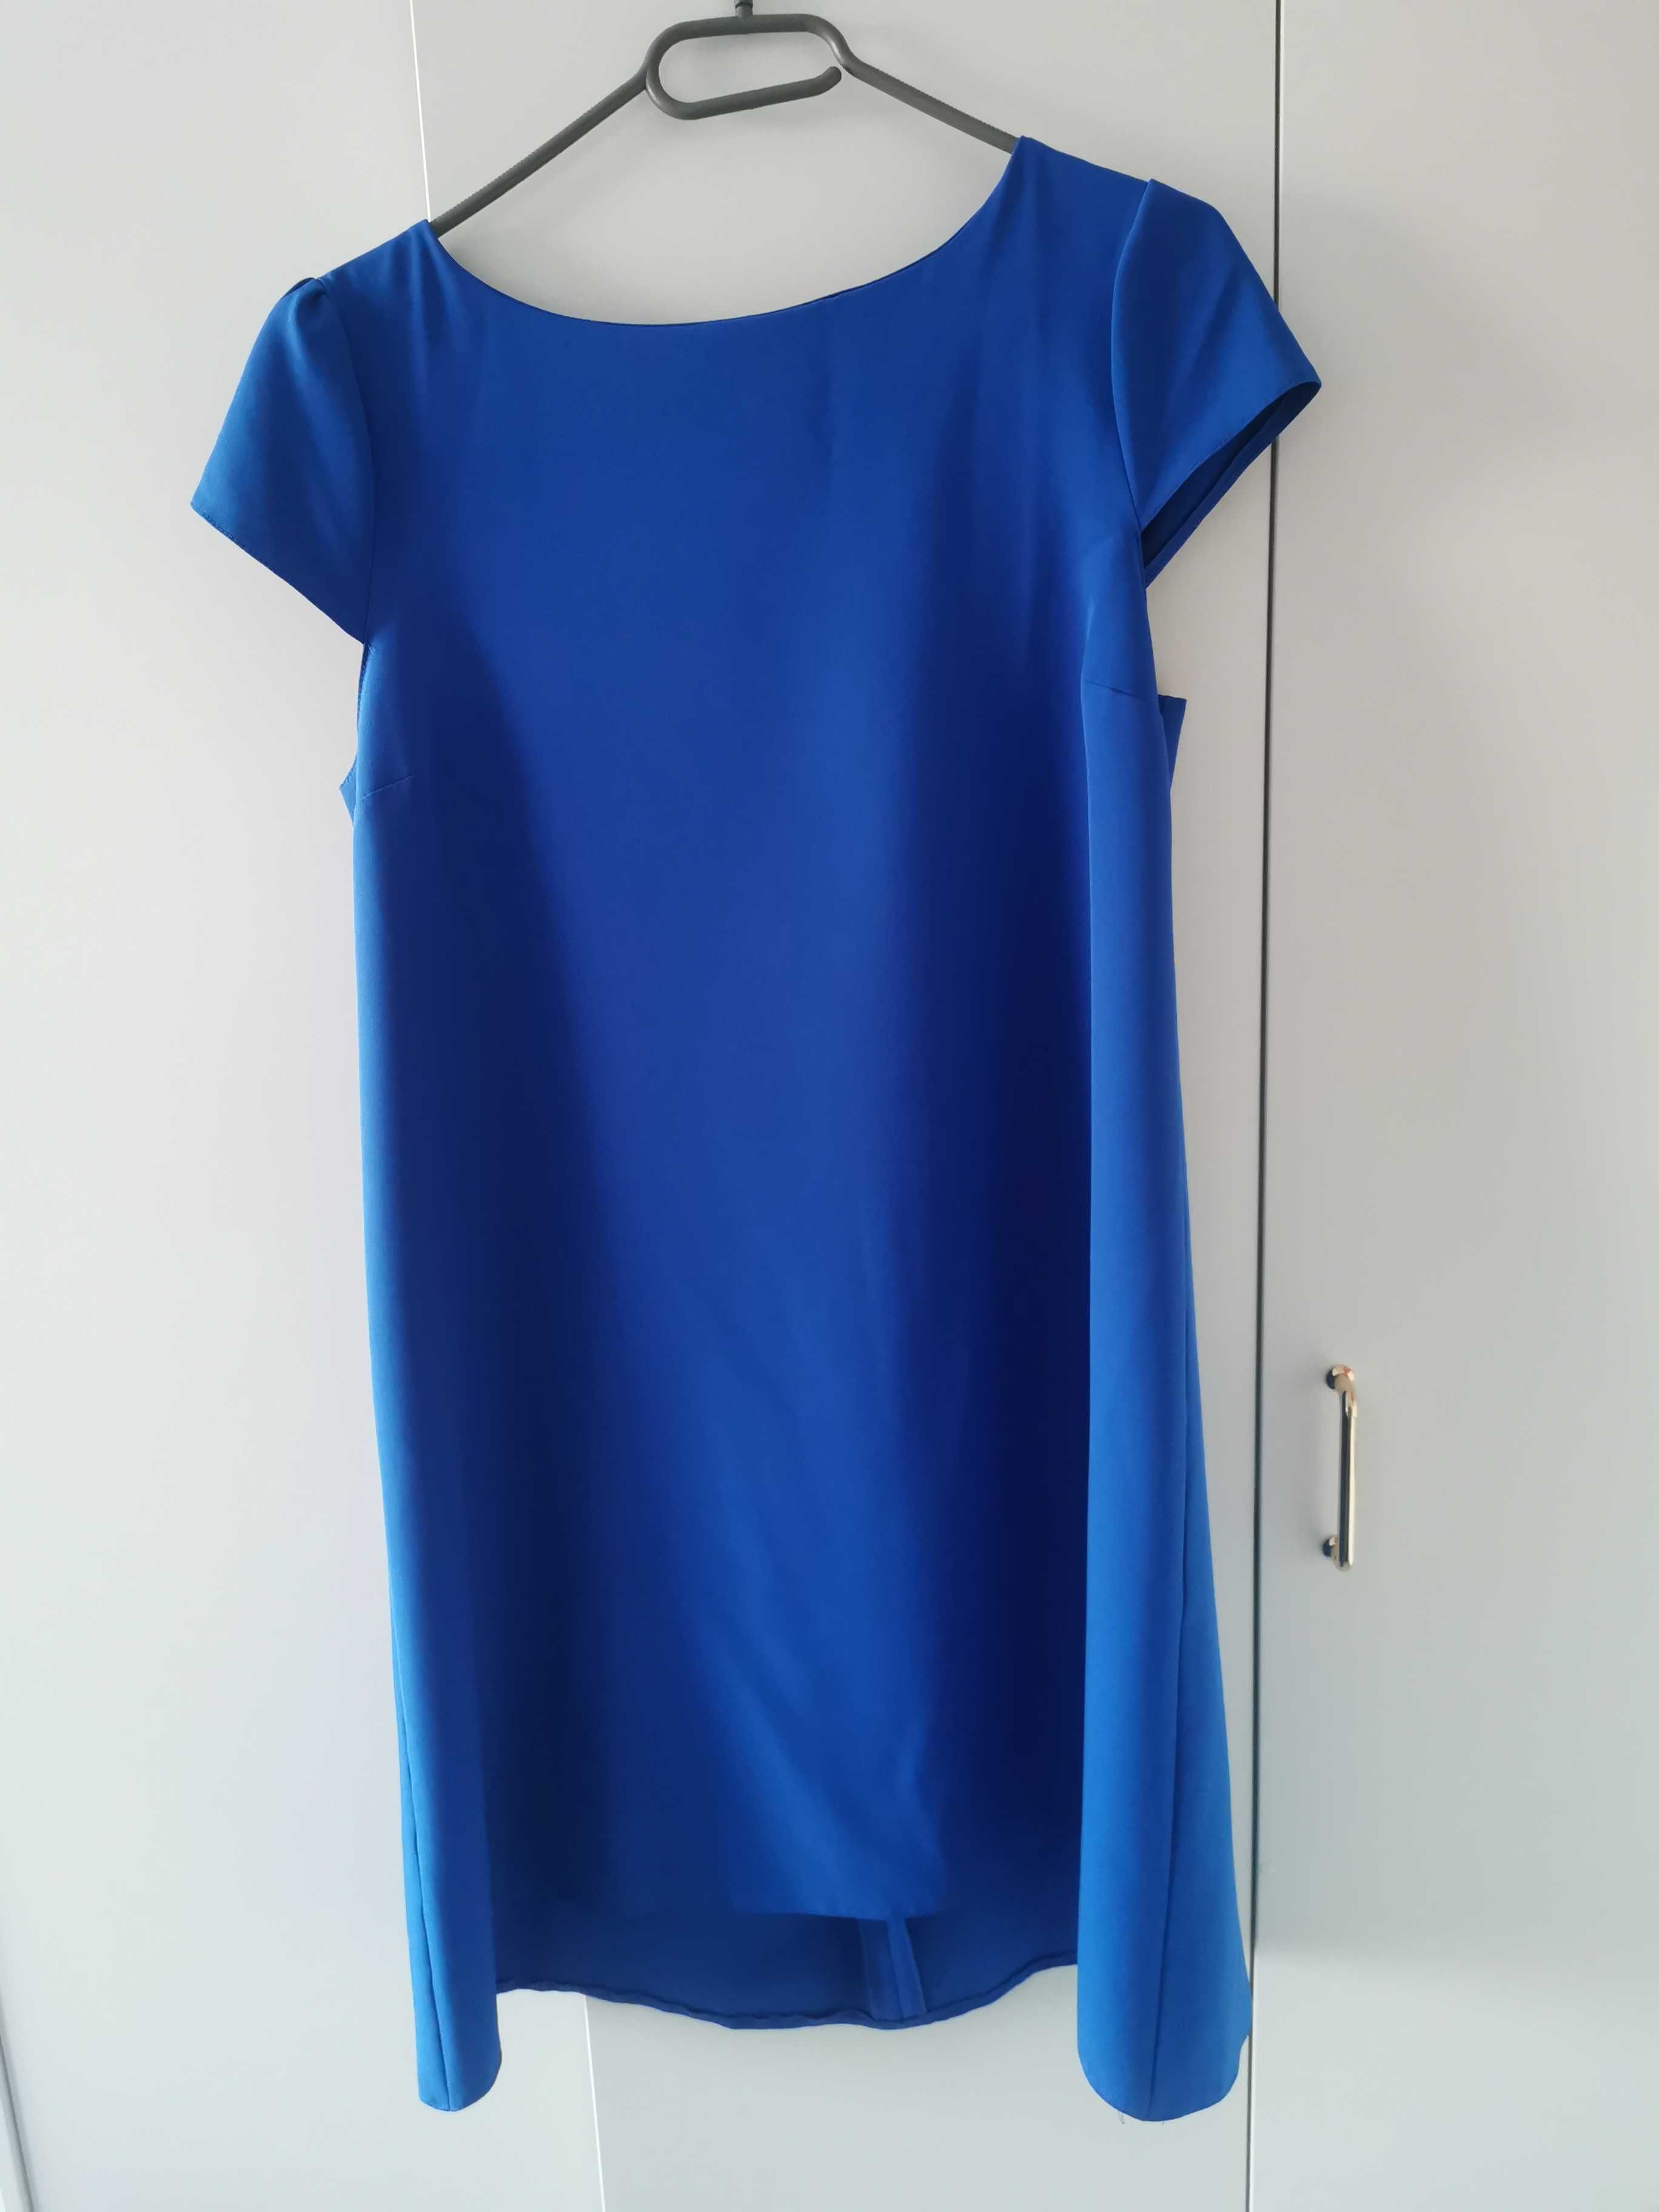 Sukienka niebieska trapezowa rozmiar 42